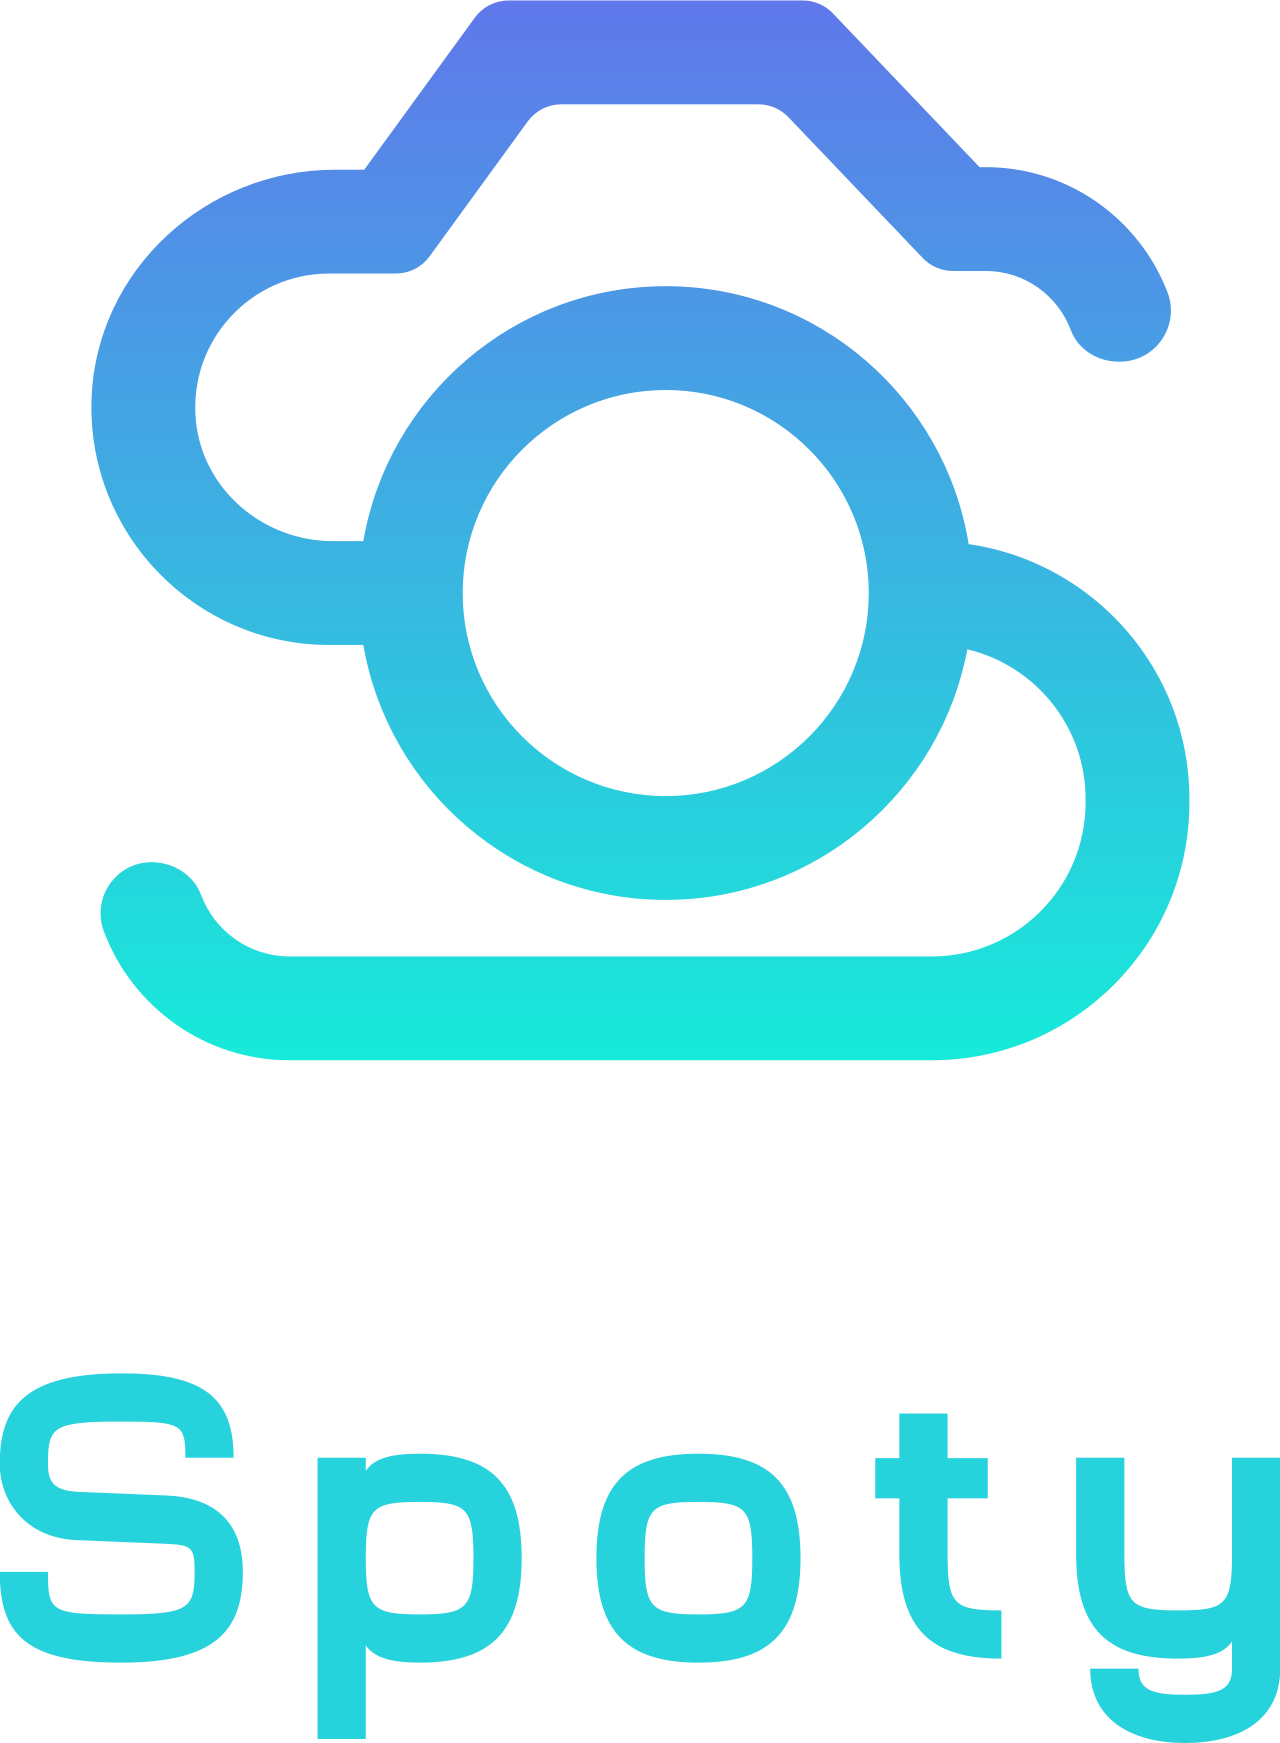 Spoty's logo